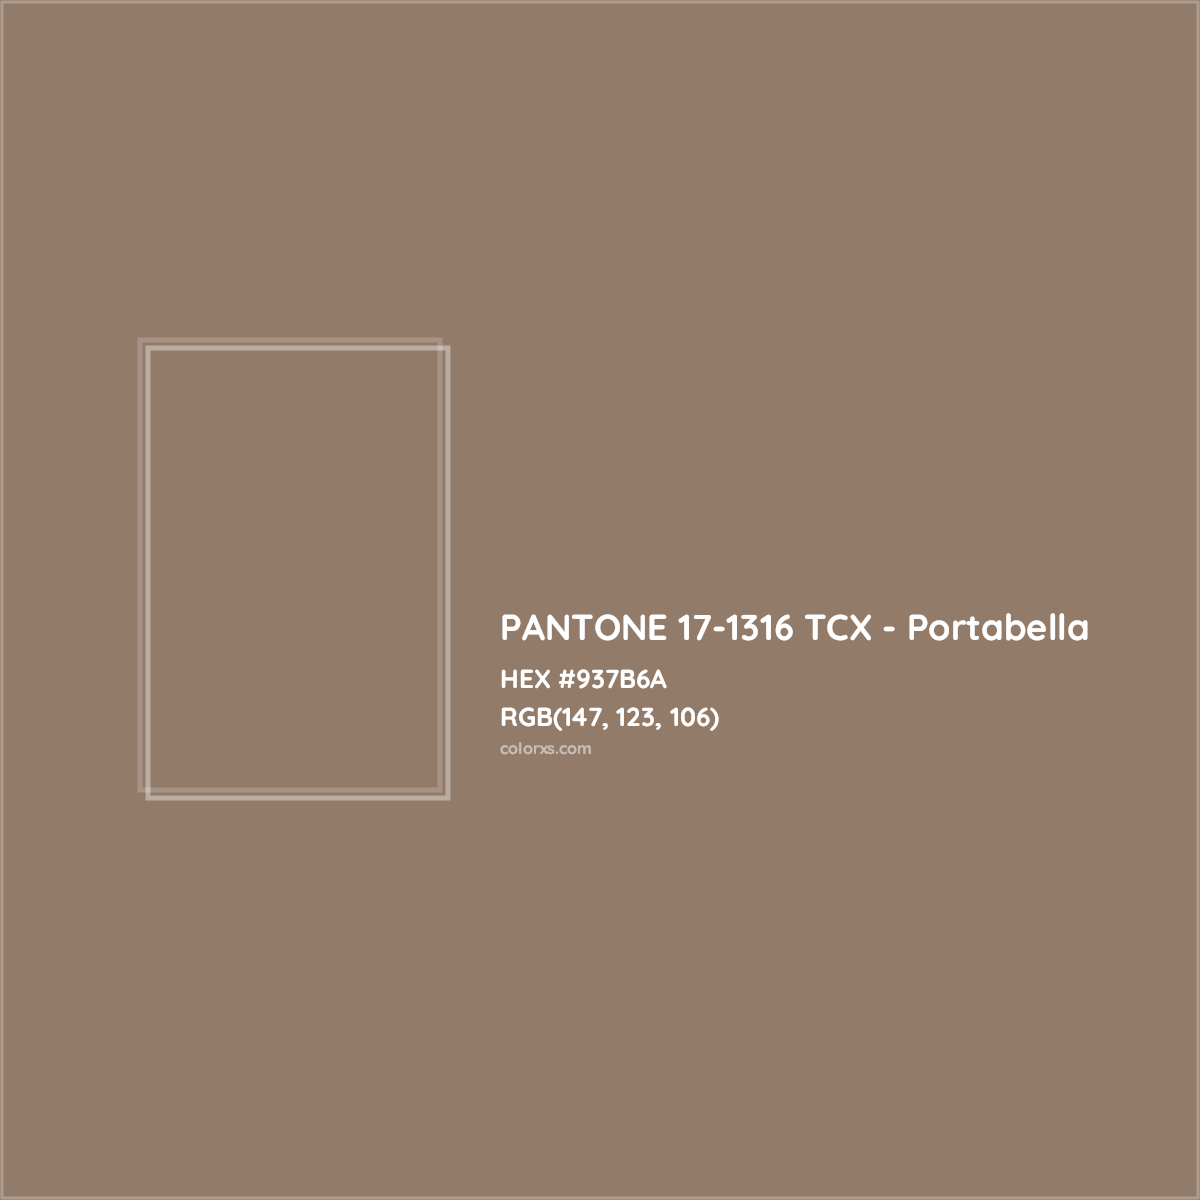 HEX #937B6A PANTONE 17-1316 TCX - Portabella CMS Pantone TCX - Color Code